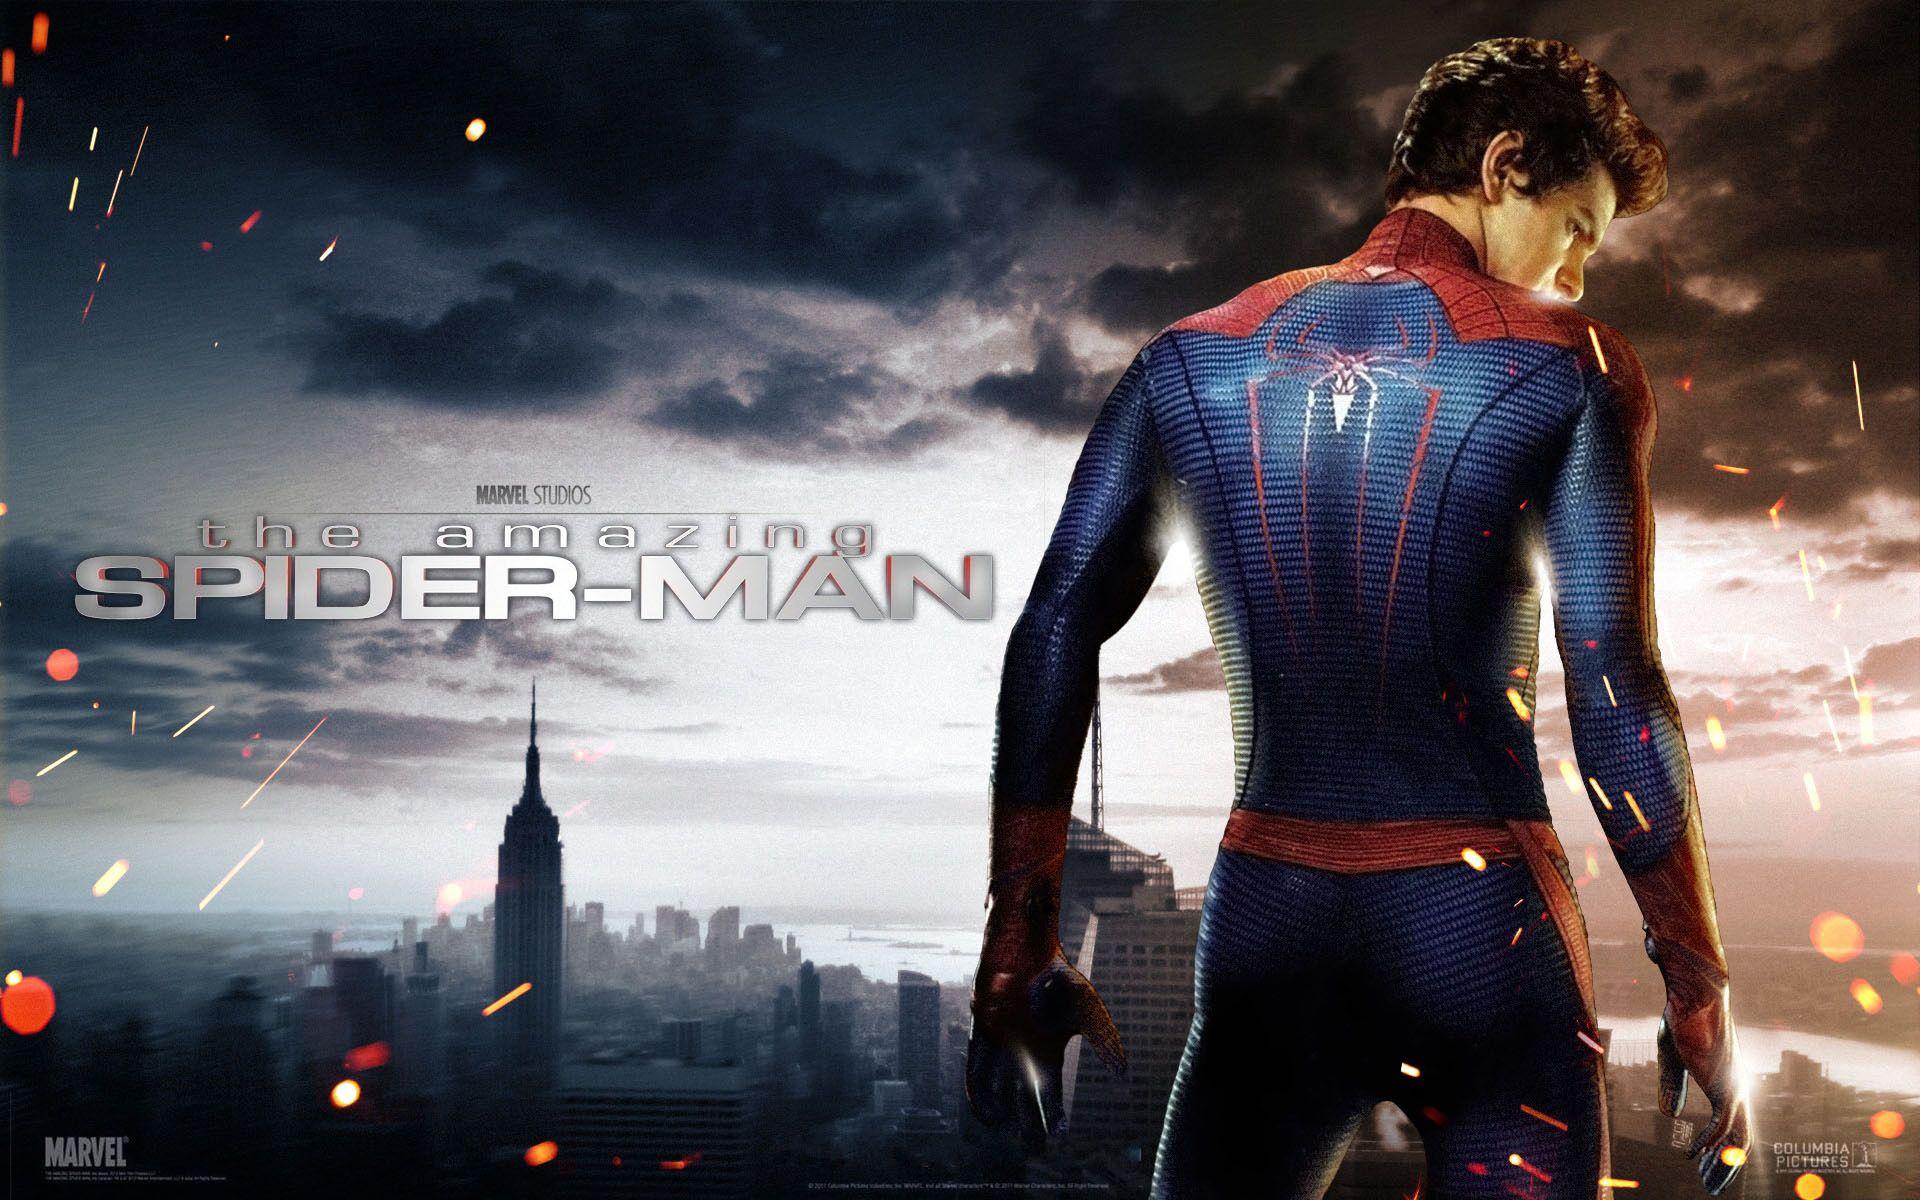 Spider Man HD Wallpaper For Desktop Download